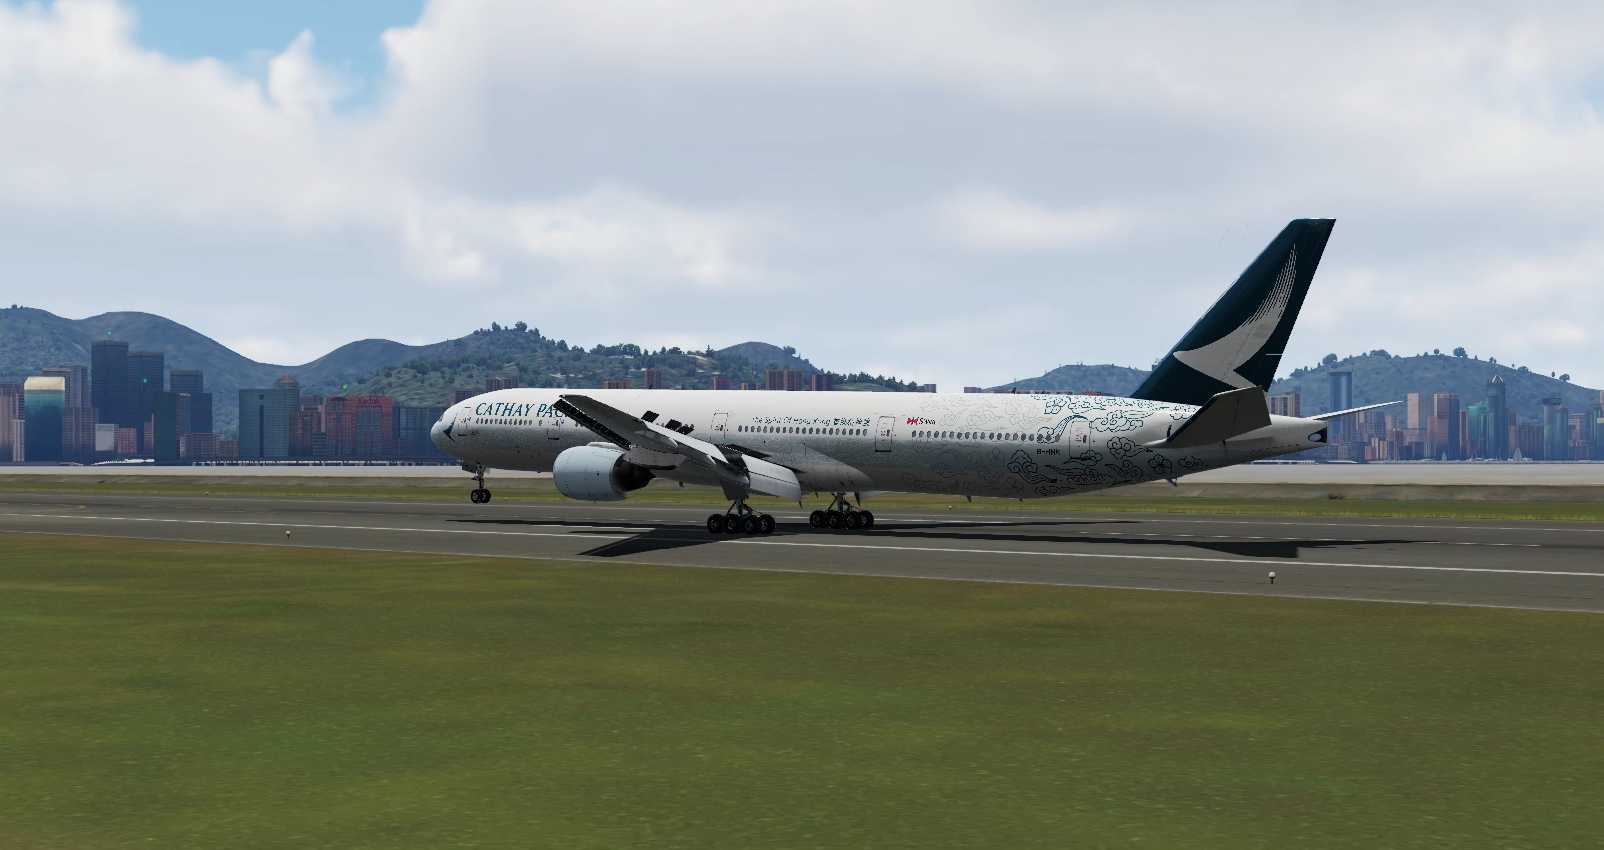 Prepar3Dv5 国泰航空777-300大横风降落香港启德国际机场-6986 